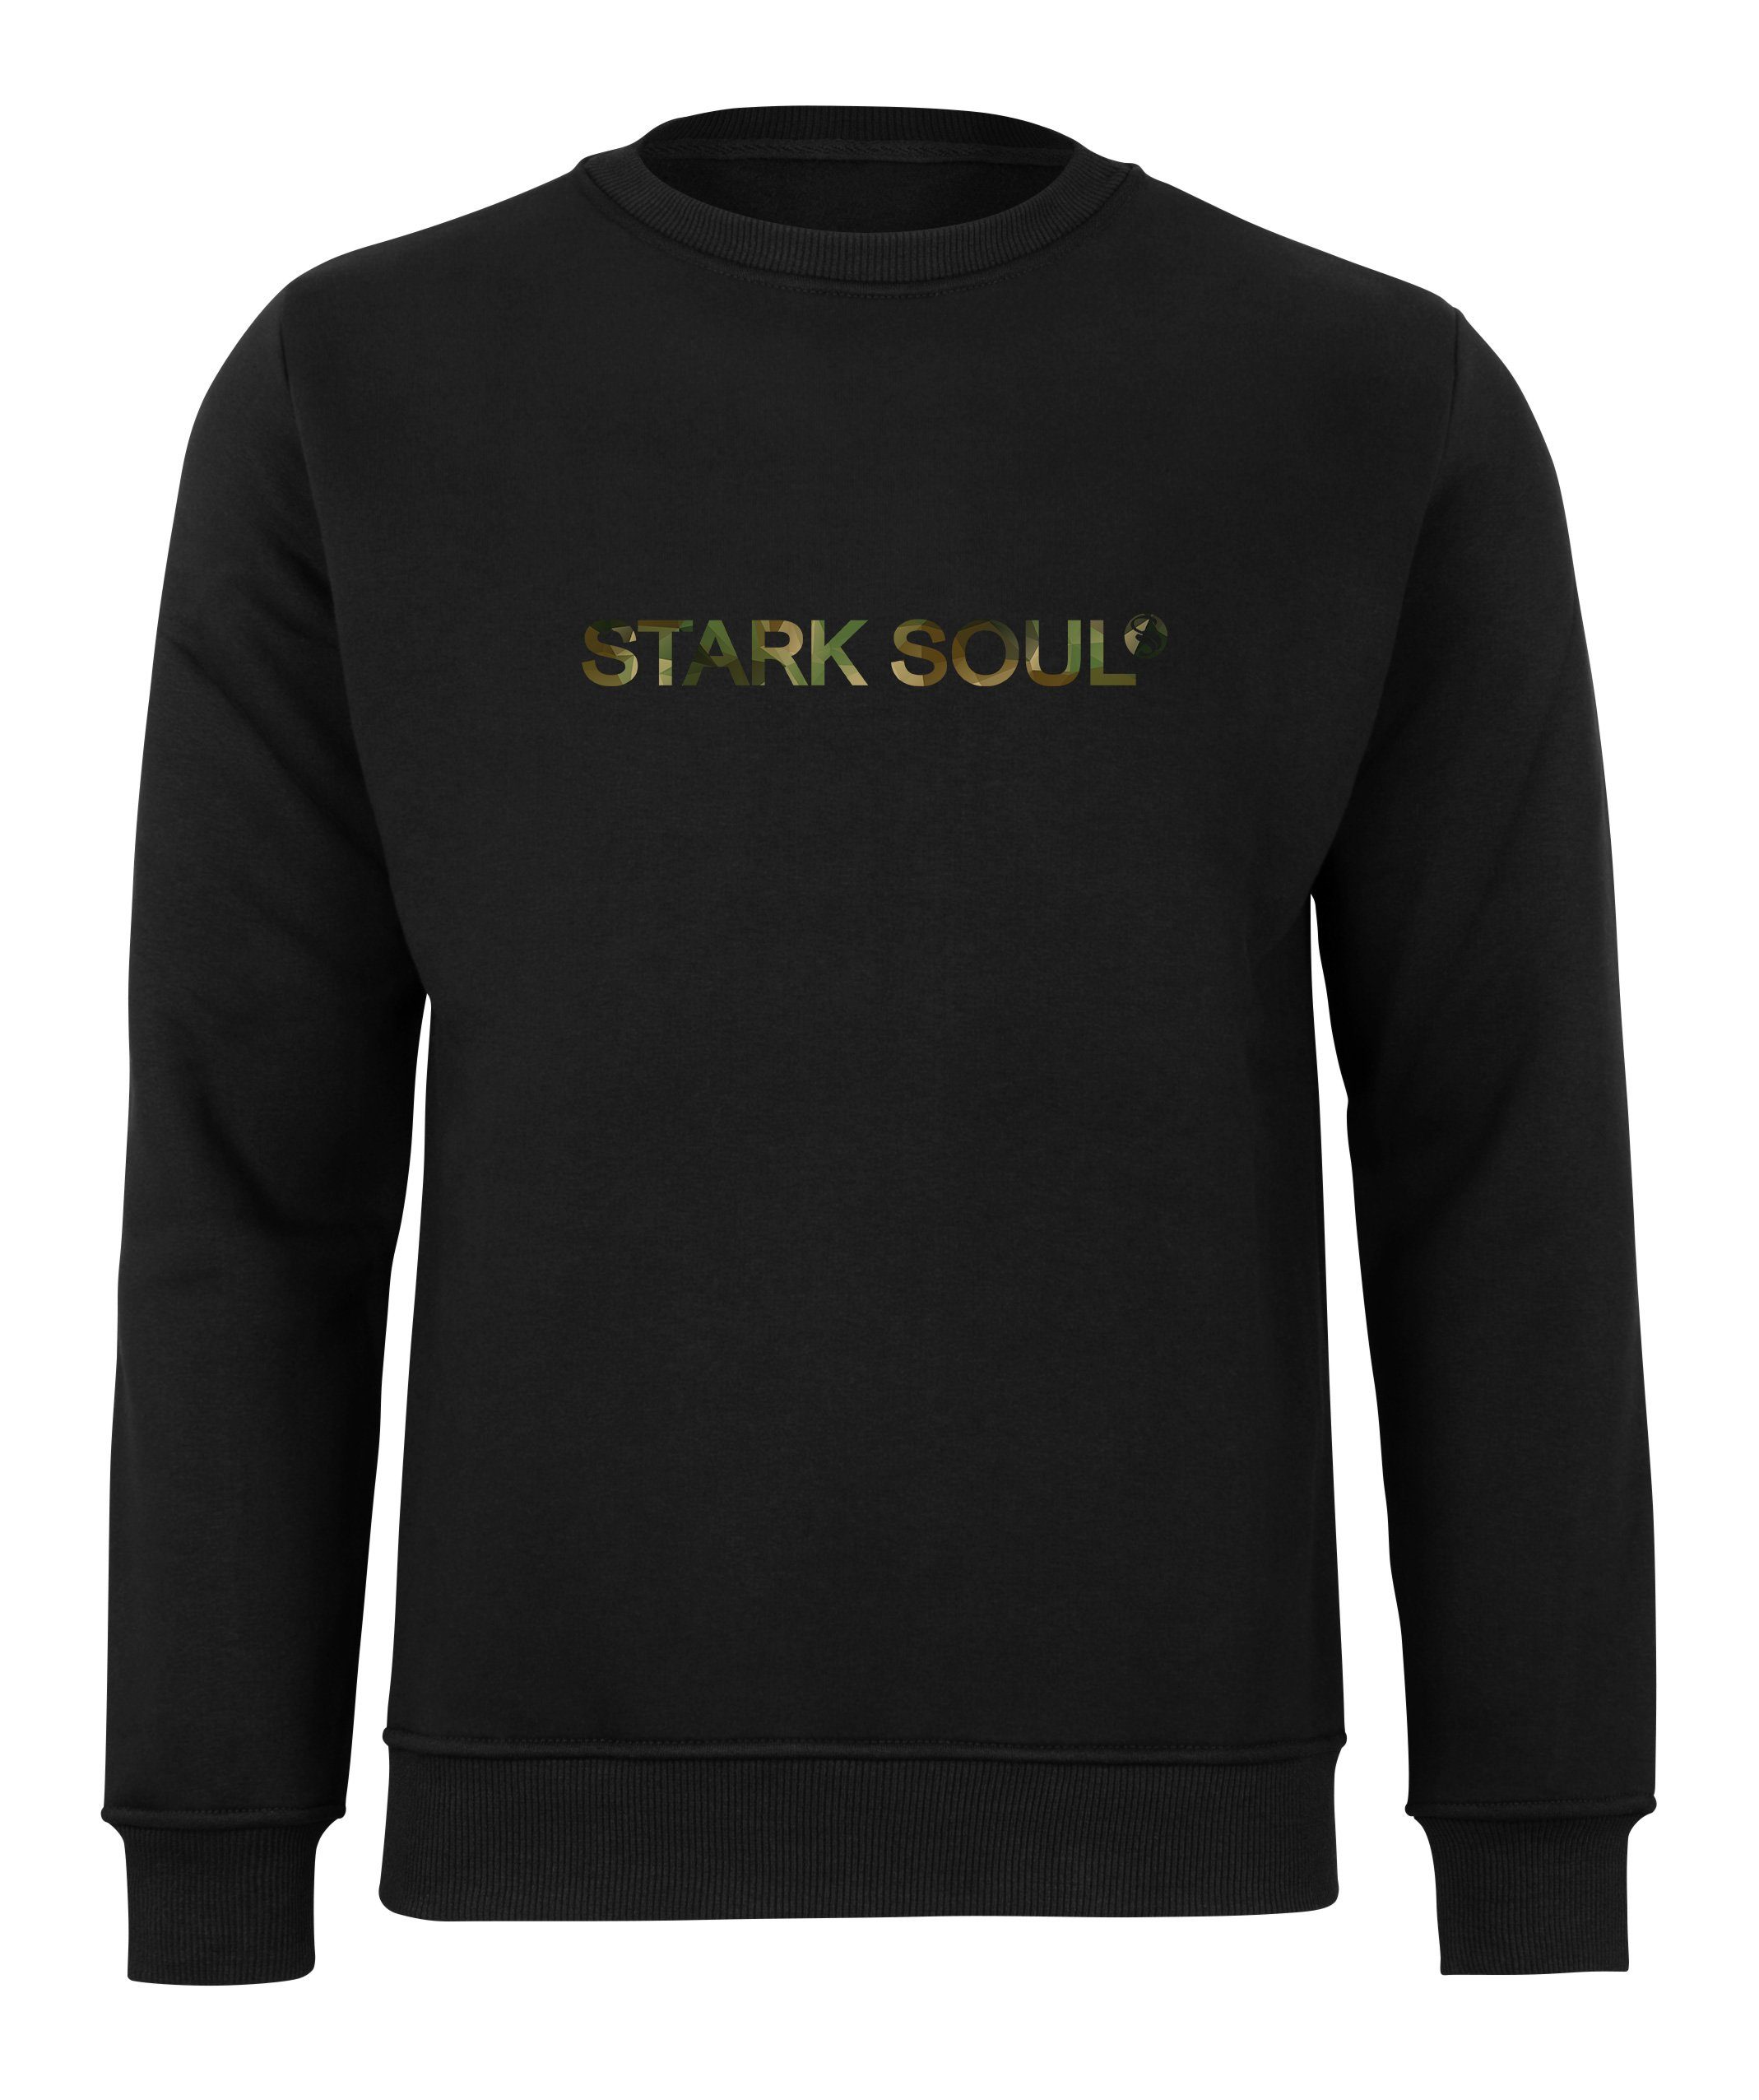 Stark Soul® Sweatshirt French-Terry-Rundhals-Sweatshirt, Innen angeraut mit "Stark Soul®"-Schriftzug in Camouflage-Optik Schwarz